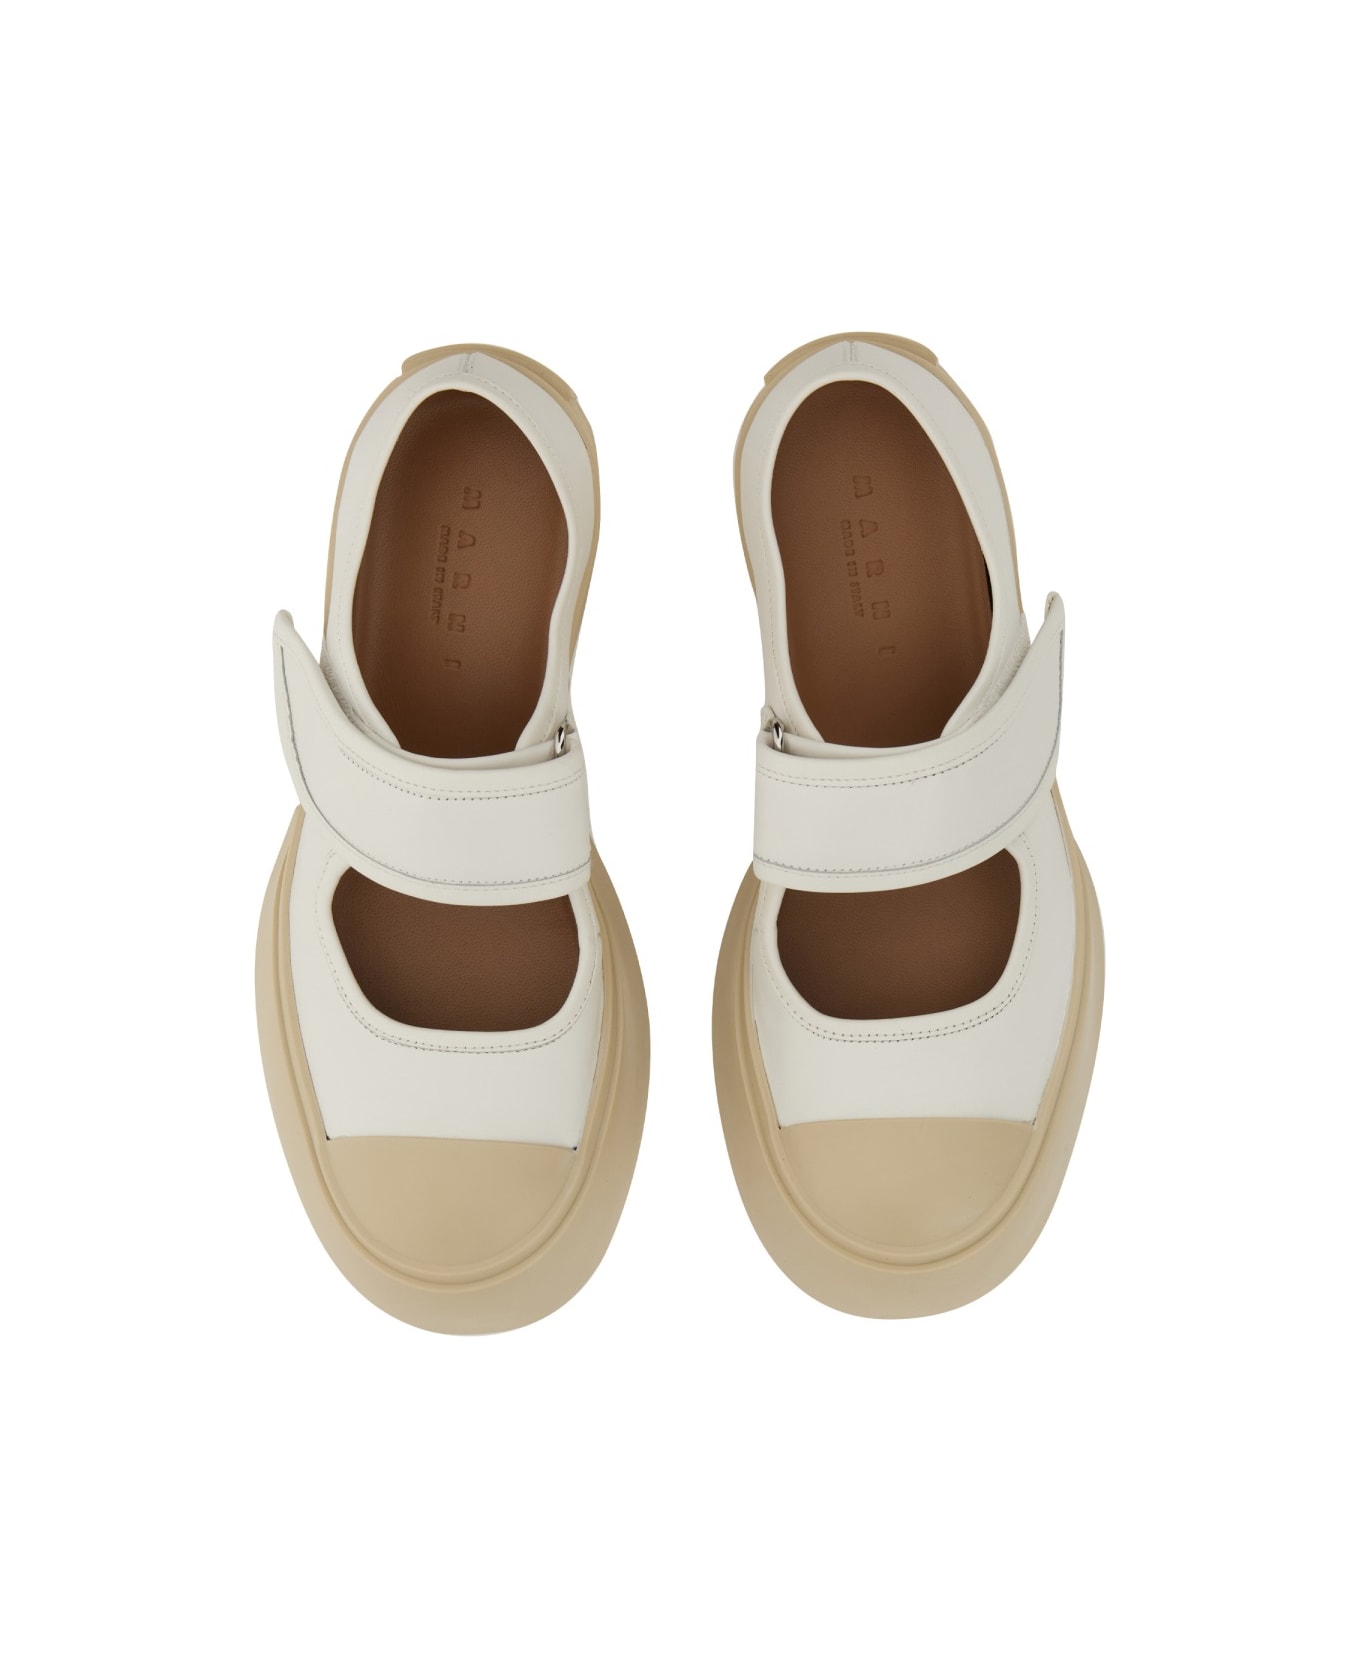 Marni Mary Jane Sneaker - WHITE スニーカー